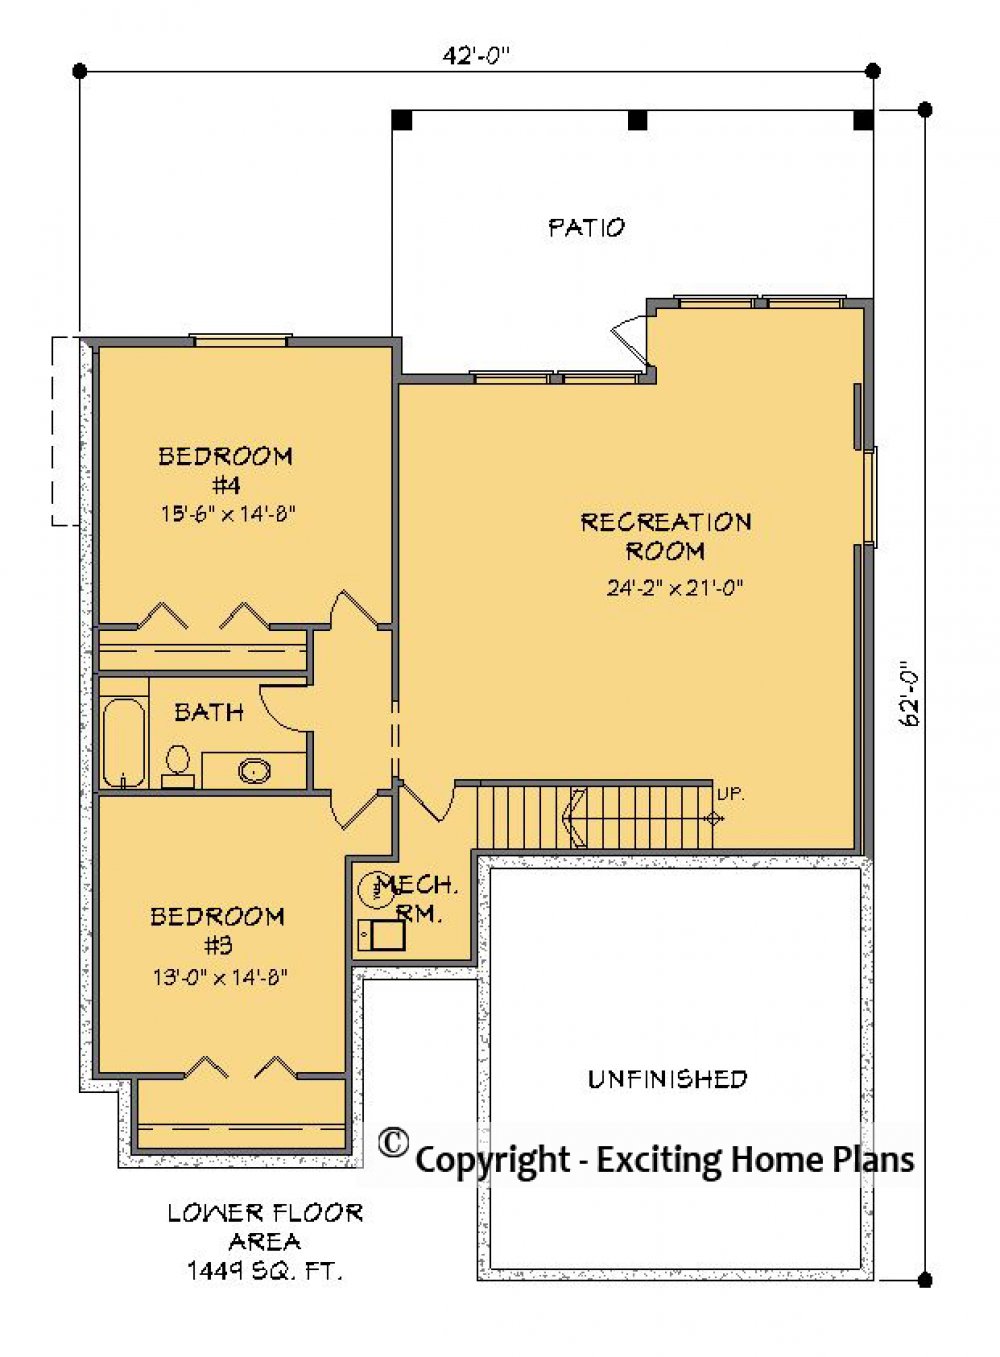 House Plan E1579-10 Lower Floor Plan